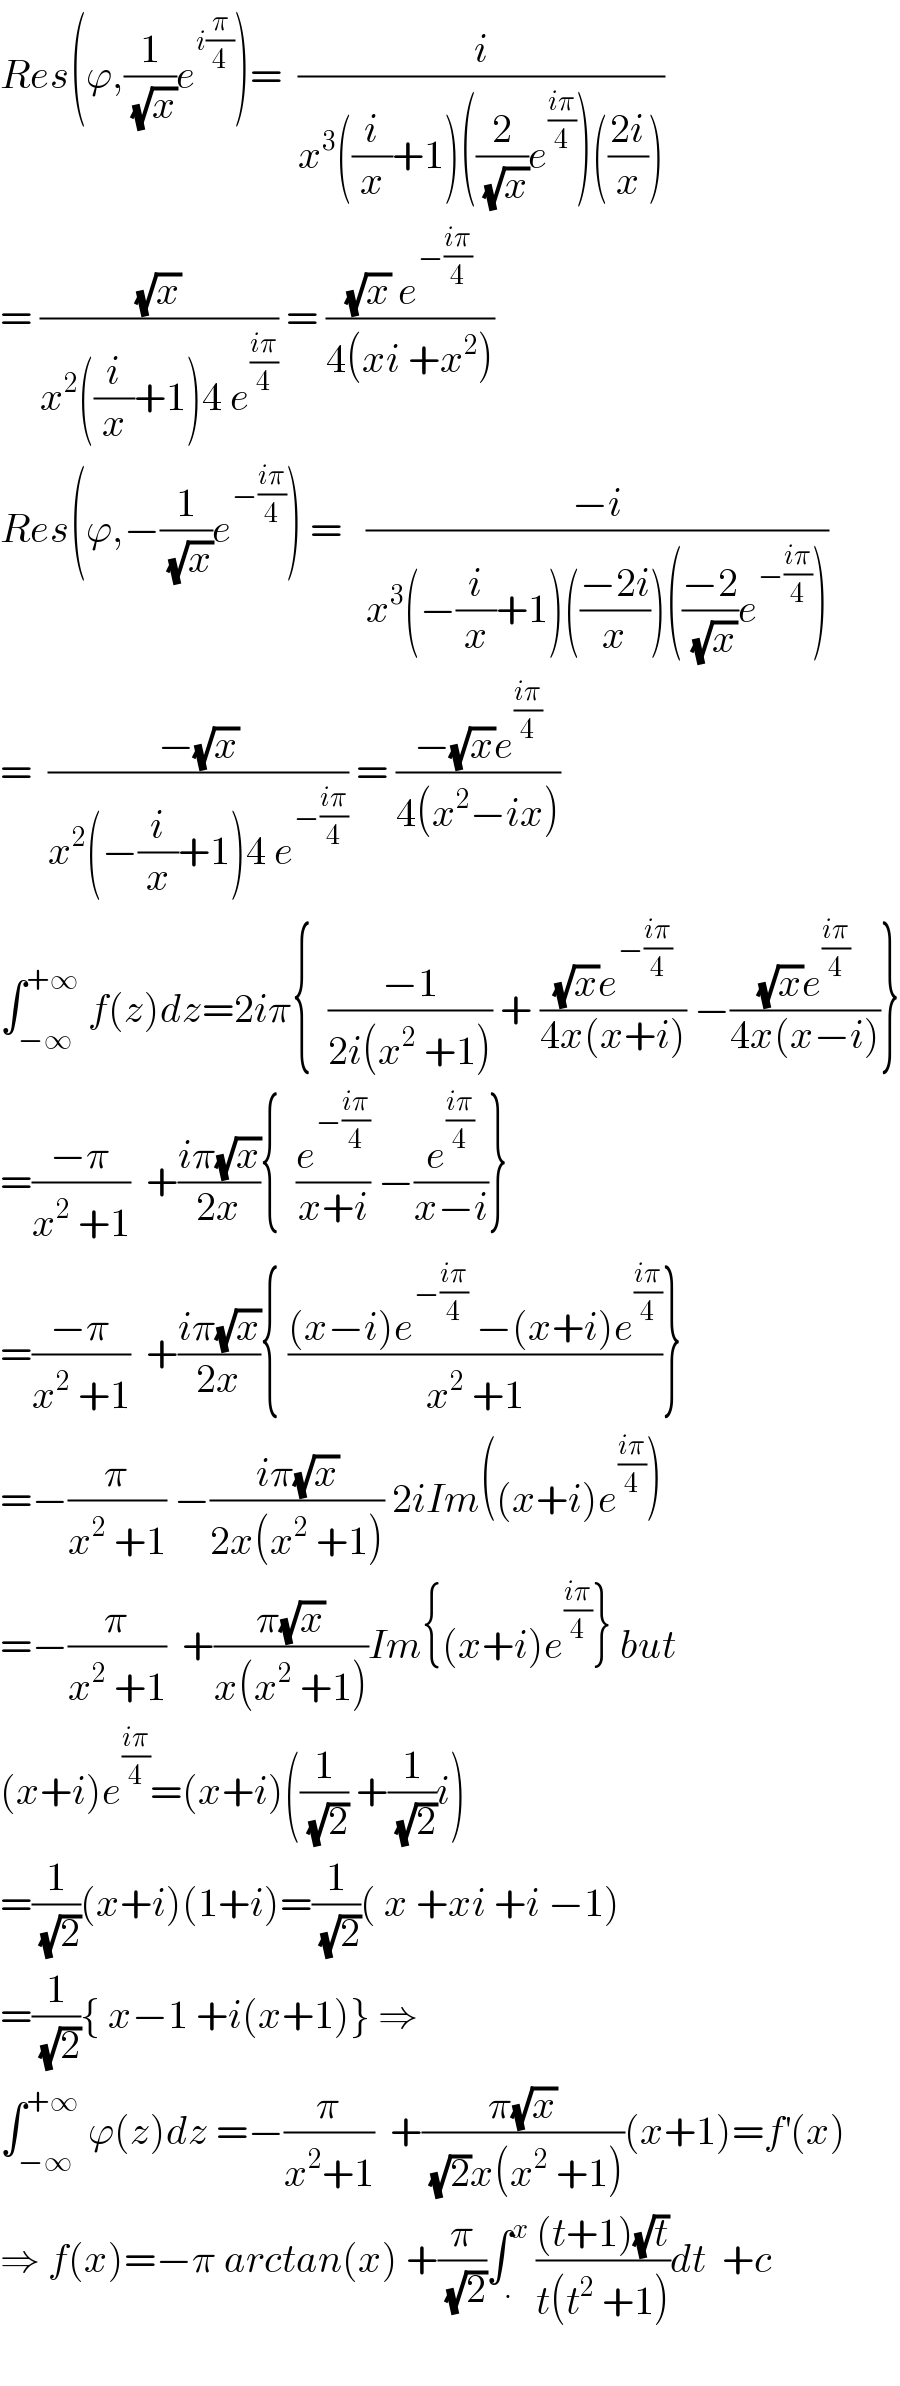 Res(ϕ,(1/(√x))e^(i(π/4)) )=  (i/(x^3 ((i/x)+1)((2/(√x))e^((iπ)/4) )(((2i)/x))))  = ((√x)/(x^2 ((i/x)+1)4 e^((iπ)/4) )) = (((√x) e^(−((iπ)/4)) )/(4(xi +x^2 )))  Res(ϕ,−(1/(√x))e^(−((iπ)/4)) ) =   ((−i)/(x^3 (−(i/x)+1)(((−2i)/x))(((−2)/(√x))e^(−((iπ)/4)) )))  =  ((−(√x))/(x^2 (−(i/x)+1)4 e^(−((iπ)/4)) )) = ((−(√x)e^((iπ)/4) )/(4(x^2 −ix)))  ∫_(−∞) ^(+∞)  f(z)dz=2iπ{  ((−1)/(2i(x^2  +1))) + (((√x)e^(−((iπ)/4)) )/(4x(x+i))) −(((√x)e^((iπ)/4) )/(4x(x−i)))}  =((−π)/(x^2  +1))  +((iπ(√x))/(2x)){  (e^(−((iπ)/4)) /(x+i)) −(e^((iπ)/4) /(x−i))}  =((−π)/(x^2  +1))  +((iπ(√x))/(2x)){ (((x−i)e^(−((iπ)/4))  −(x+i)e^((iπ)/4) )/(x^2  +1))}  =−(π/(x^2  +1)) −((iπ(√x))/(2x(x^2  +1))) 2iIm((x+i)e^((iπ)/4) )  =−(π/(x^2  +1))  +((π(√x))/(x(x^2  +1)))Im{(x+i)e^((iπ)/4) } but  (x+i)e^((iπ)/4) =(x+i)((1/(√2)) +(1/(√2))i)  =(1/(√2))(x+i)(1+i)=(1/(√2))( x +xi +i −1)  =(1/(√2)){ x−1 +i(x+1)} ⇒  ∫_(−∞) ^(+∞)  ϕ(z)dz =−(π/(x^2 +1))  +((π(√x))/((√2)x(x^2  +1)))(x+1)=f^′ (x)  ⇒ f(x)=−π arctan(x) +(π/(√2))∫_. ^x  (((t+1)(√t))/(t(t^2  +1)))dt  +c    